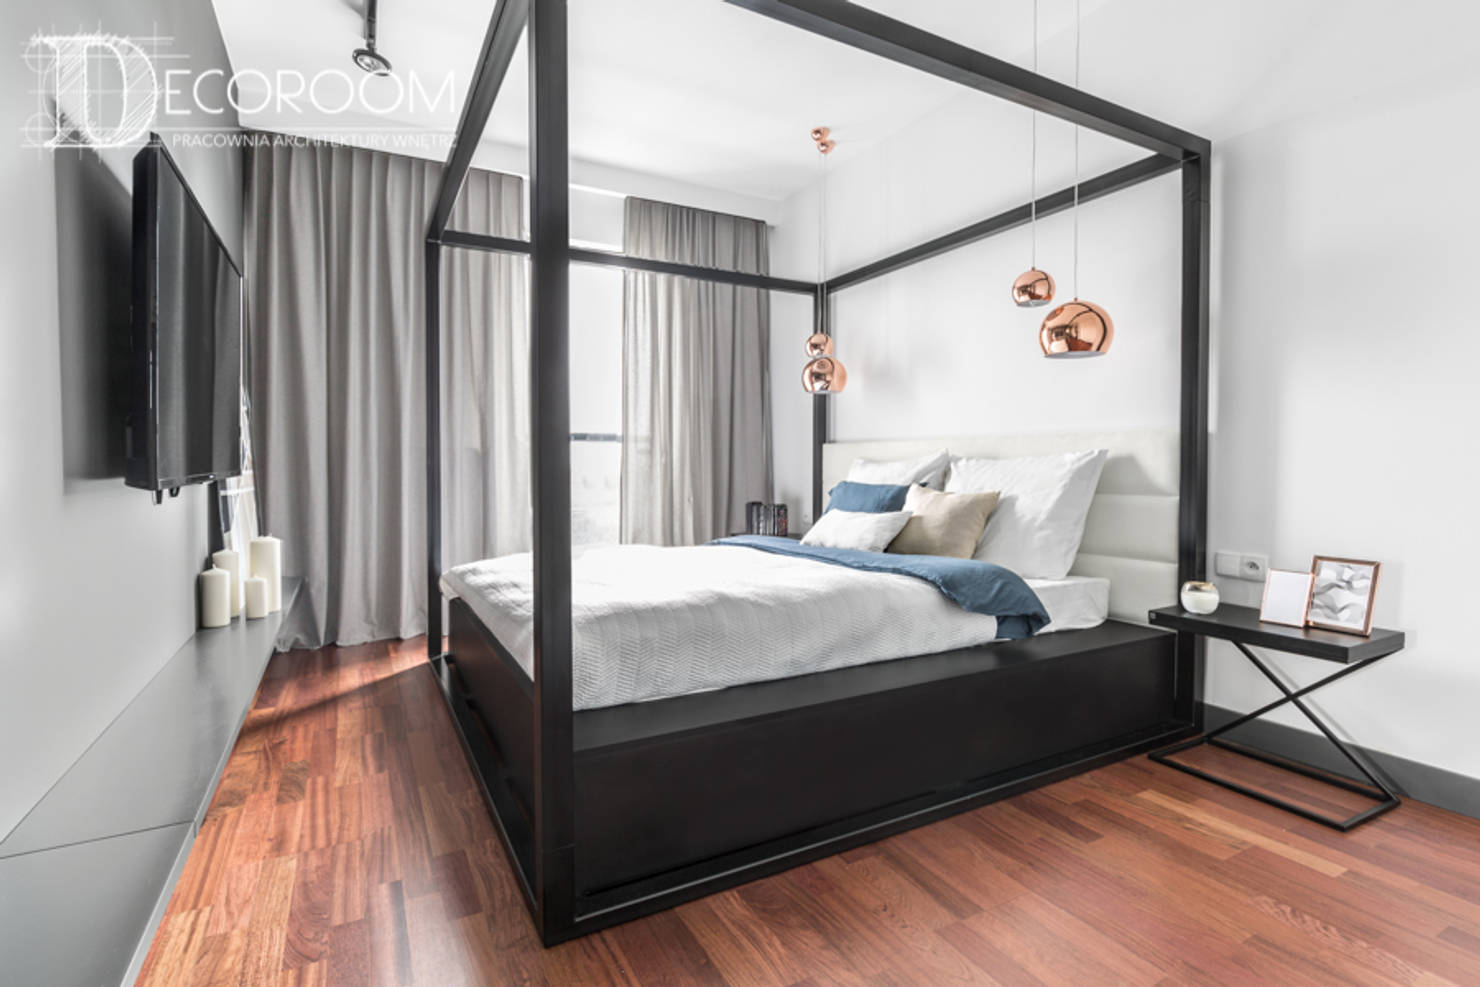 16 отличных идей для дизайна спальни- фотографии
				